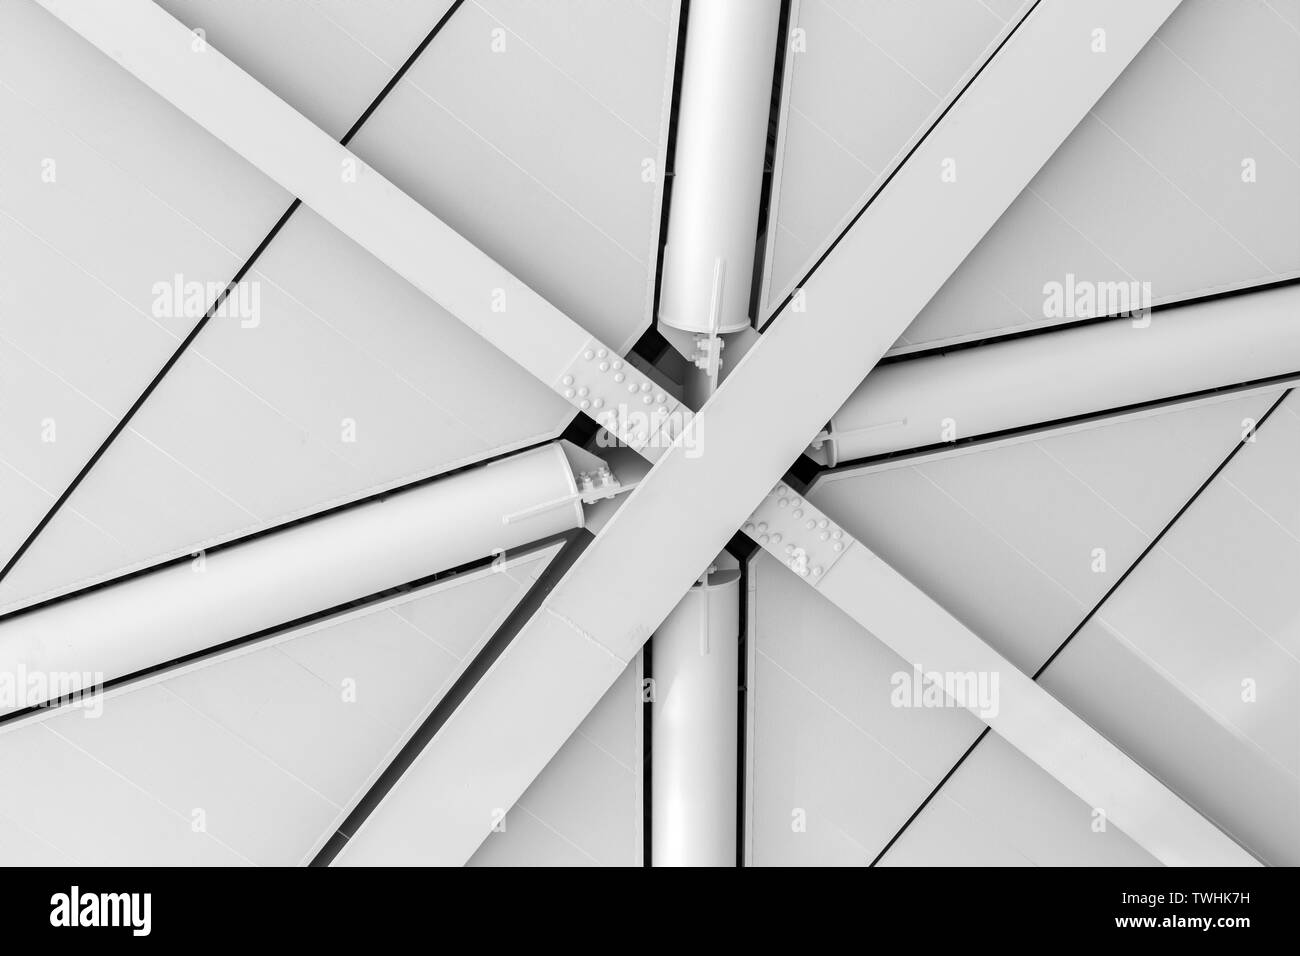 Abstract architettura industriale foto di sfondo, interna struttura a soffitto con travi in acciaio e pannelli bianchi Foto Stock